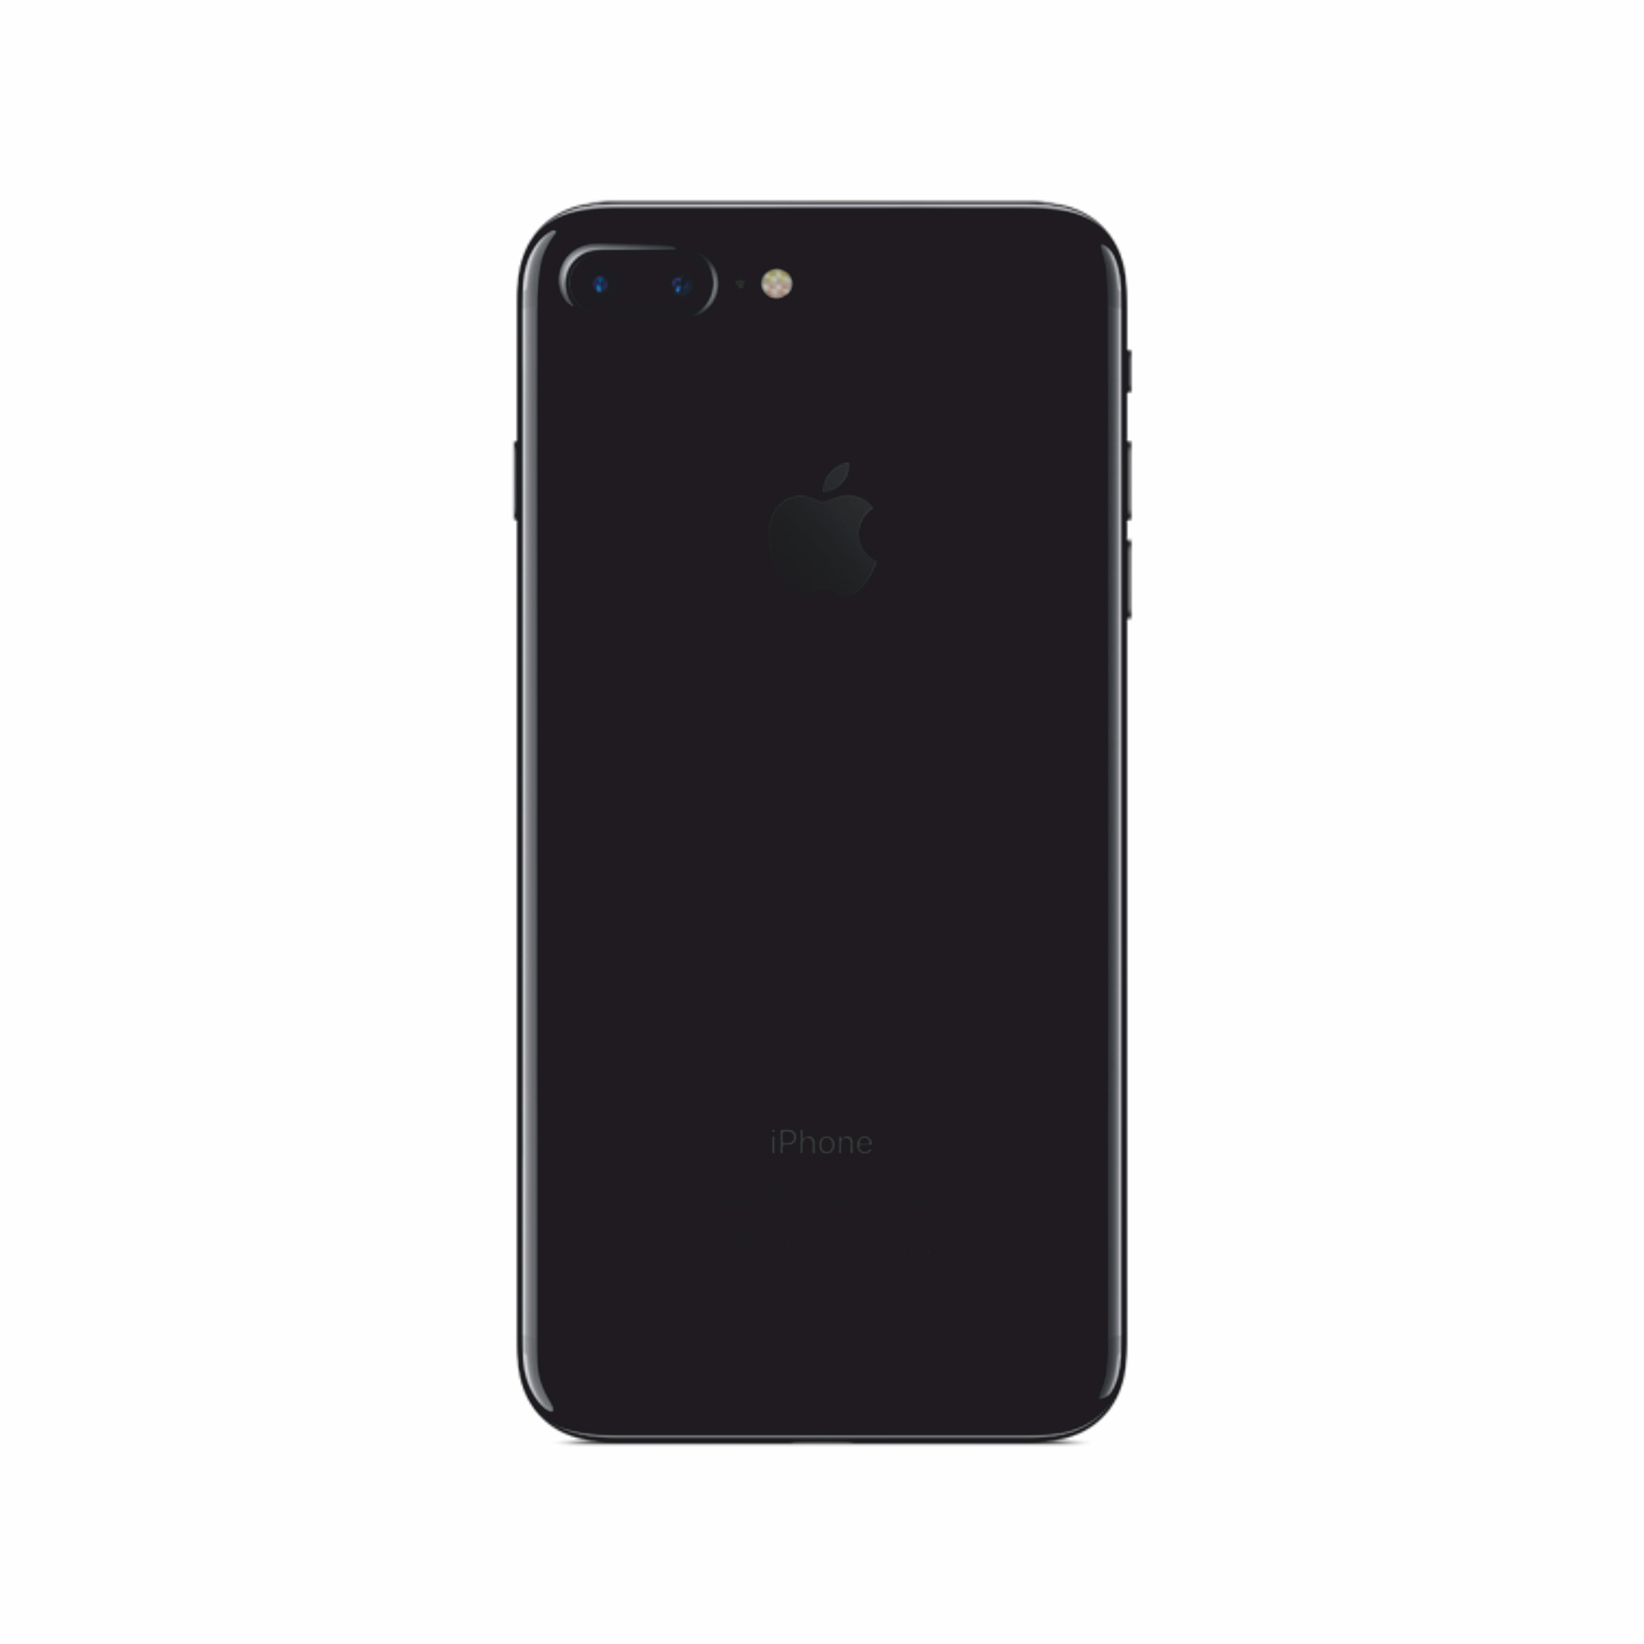 Айфон 7 128 гб оригинал. Apple iphone 7 128gb Jet Black. Iphone 7 Plus Jet Black 128gb. Apple iphone 7 32 GB Jet Black. Apple iphone 7 Plus 32gb Jet Black.